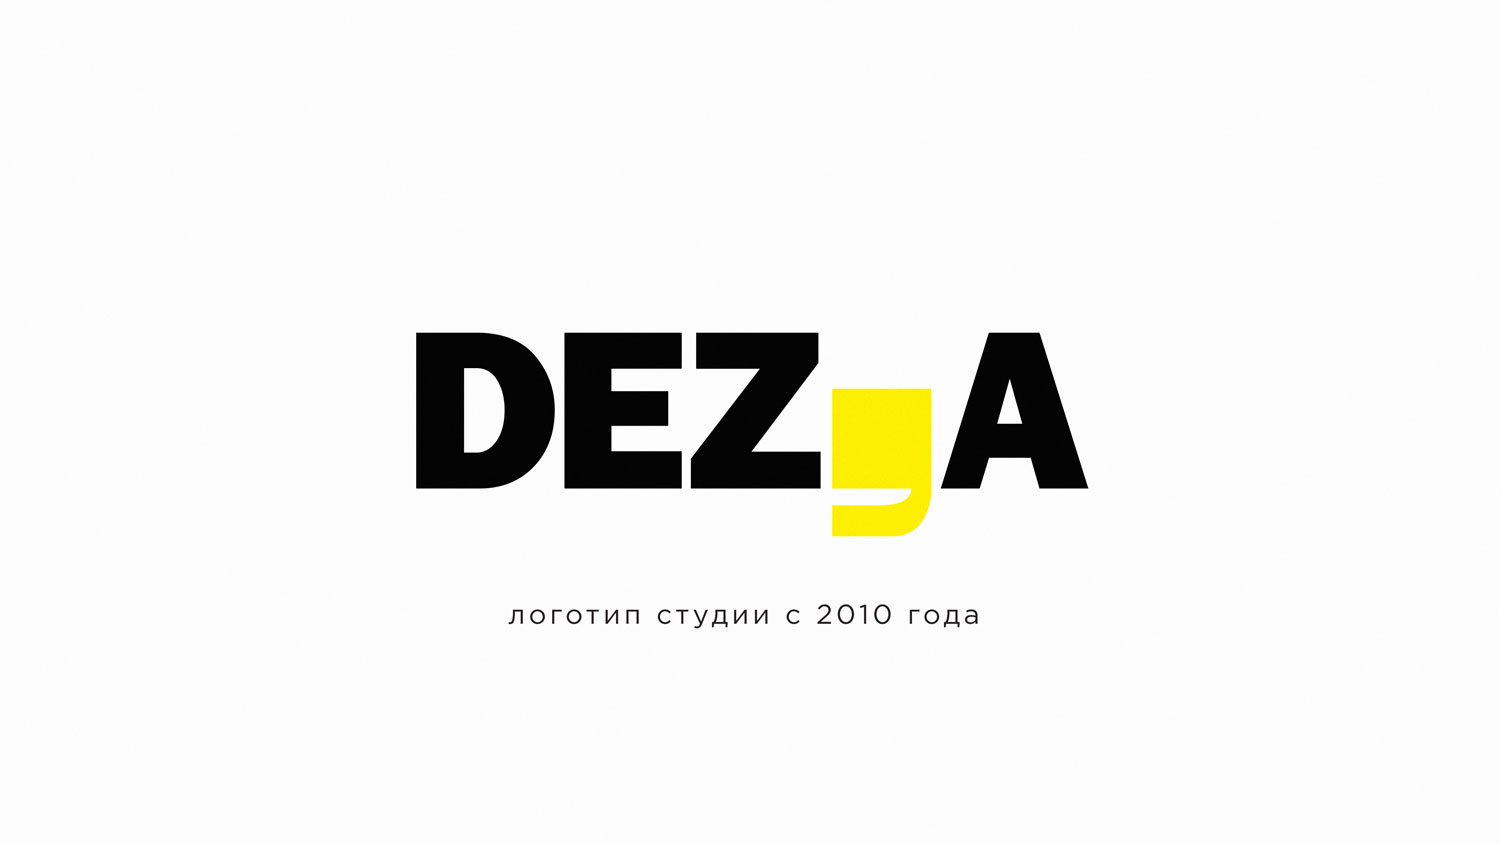 Логотип студии брендинга DEZA с 2010 года